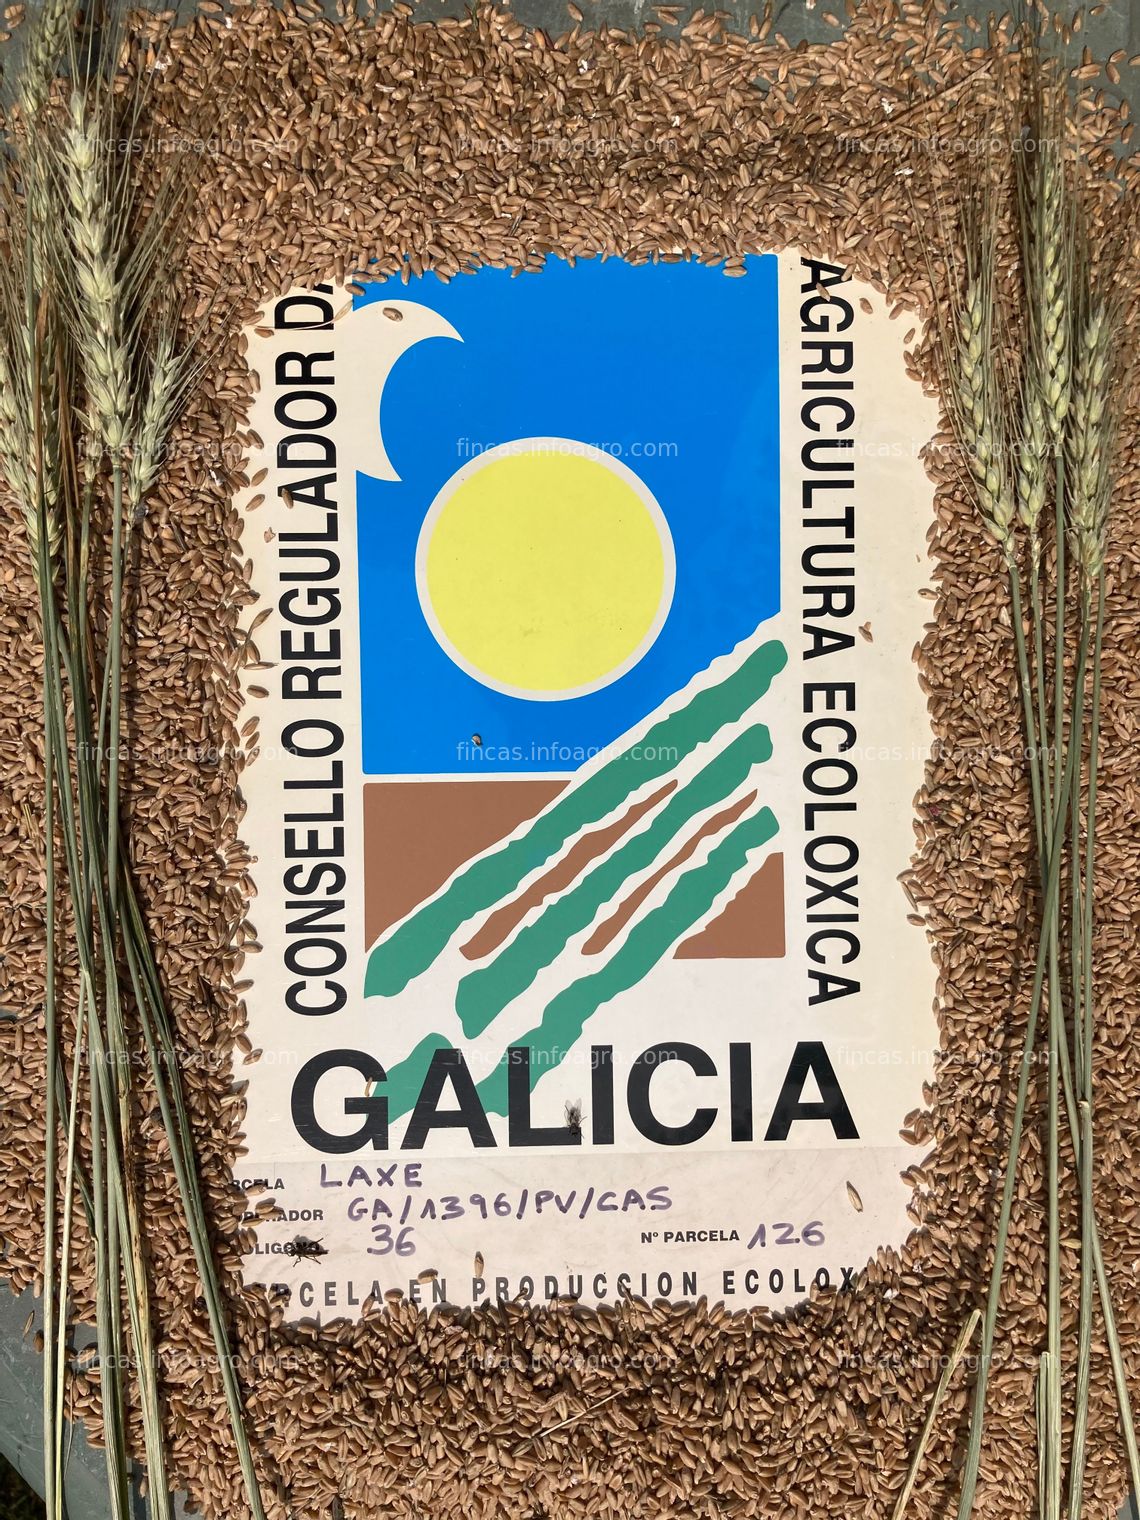 Fotos de Vendo Trigo ecológico de Galicia. Certíficado